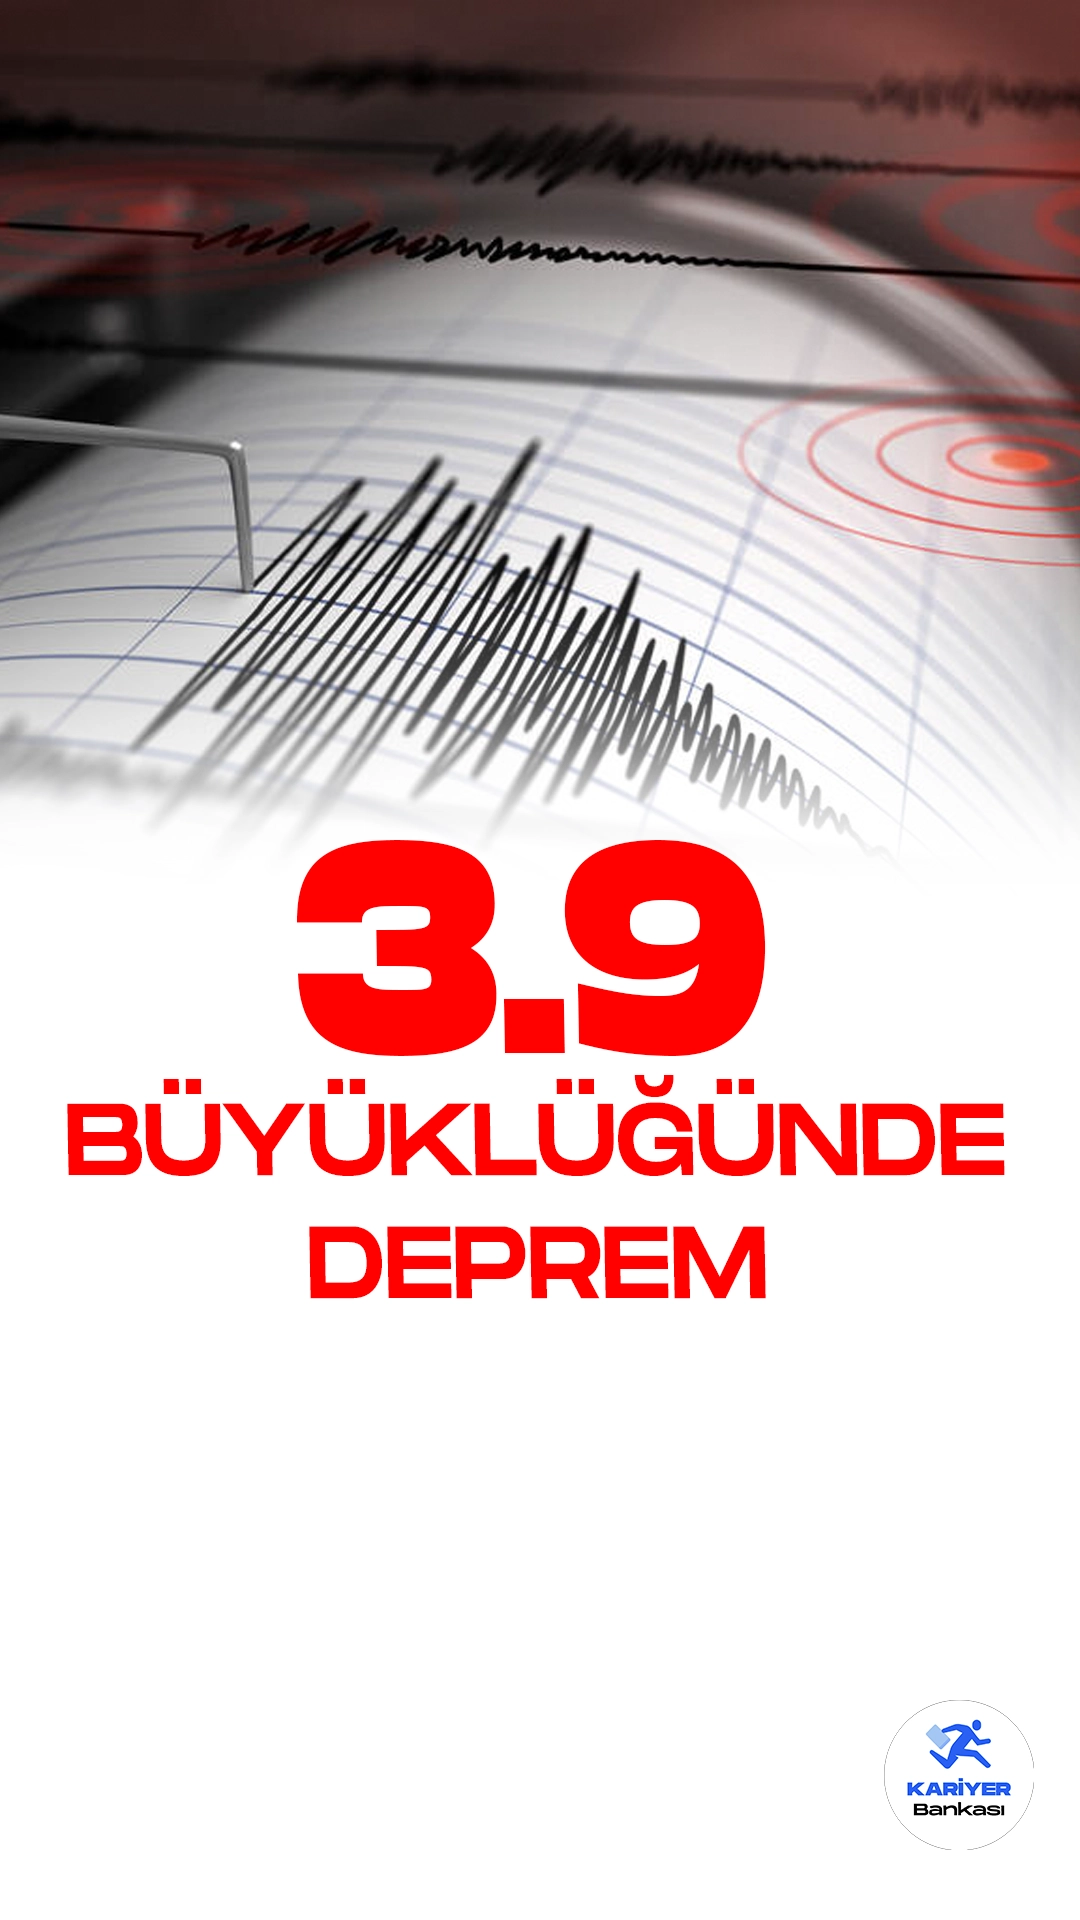 Bingöl'de 3.9 Büyüklüğünde Deprem Oldu. İçişleri Bakanlığı Acil ve Acil Durum Yönetimi Başkanlığı Deprem Daire resmi sayfasından yayımlanan son dakika bilgisine göre, Bingöl'ün Yayladere ilçesinde 3.9 büyüklüğünde deprem meydana geldi.